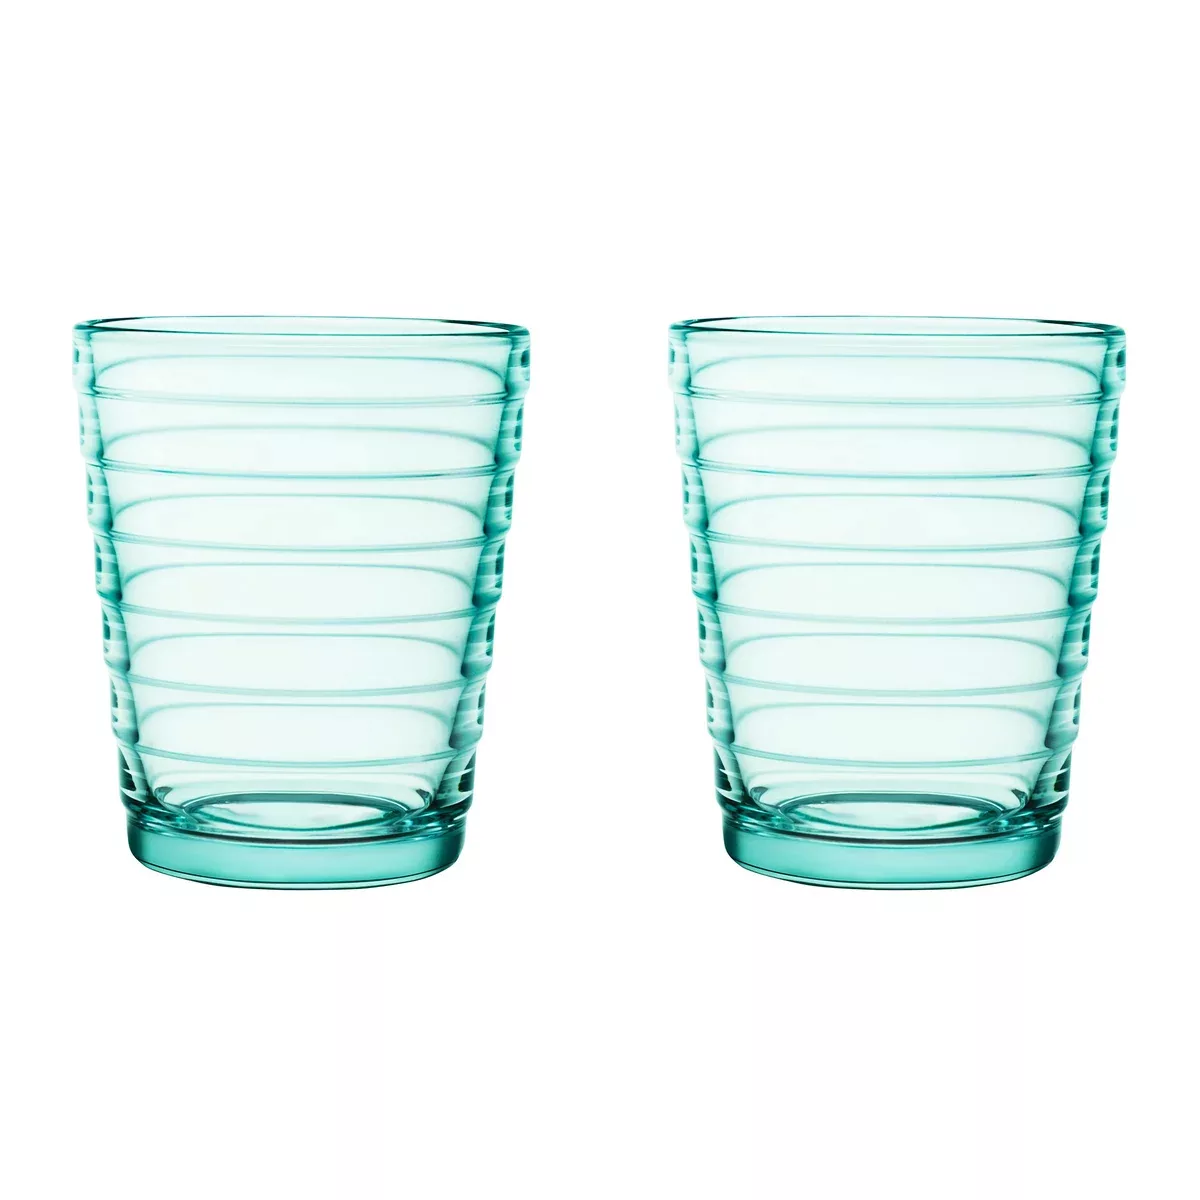 iittala - Aino Aalto Glas 2er Set 22cl - wassergrün/0,2L/H x Ø 9x7,6cm günstig online kaufen